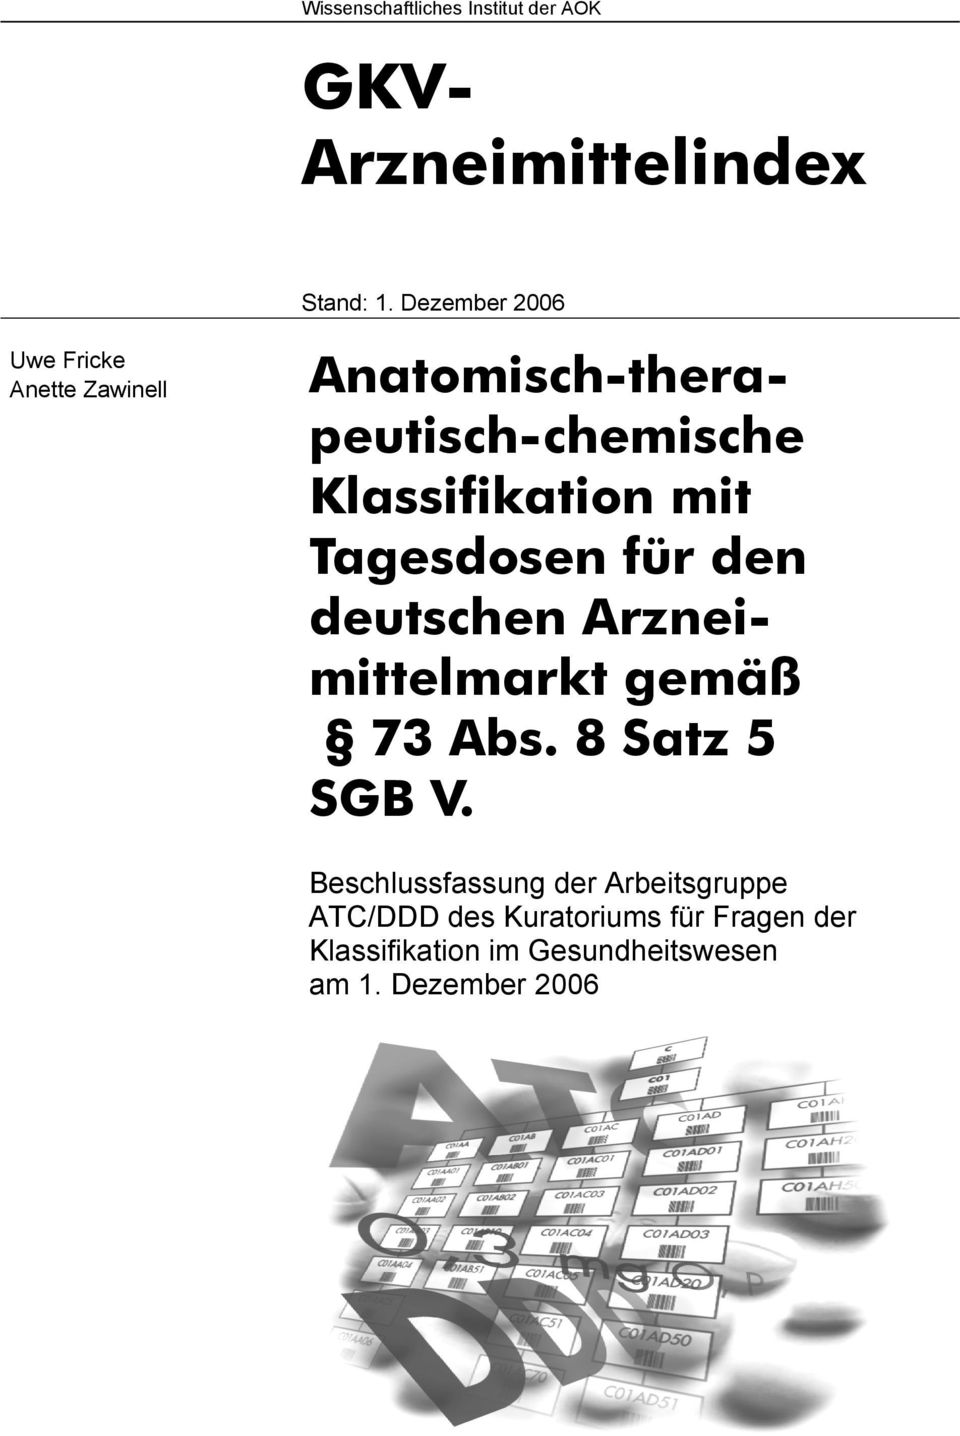 mit Tagesdosen für den deutschen Arzneimittelmarkt gemäß 73 Abs. 8 Satz 5 SGB V.